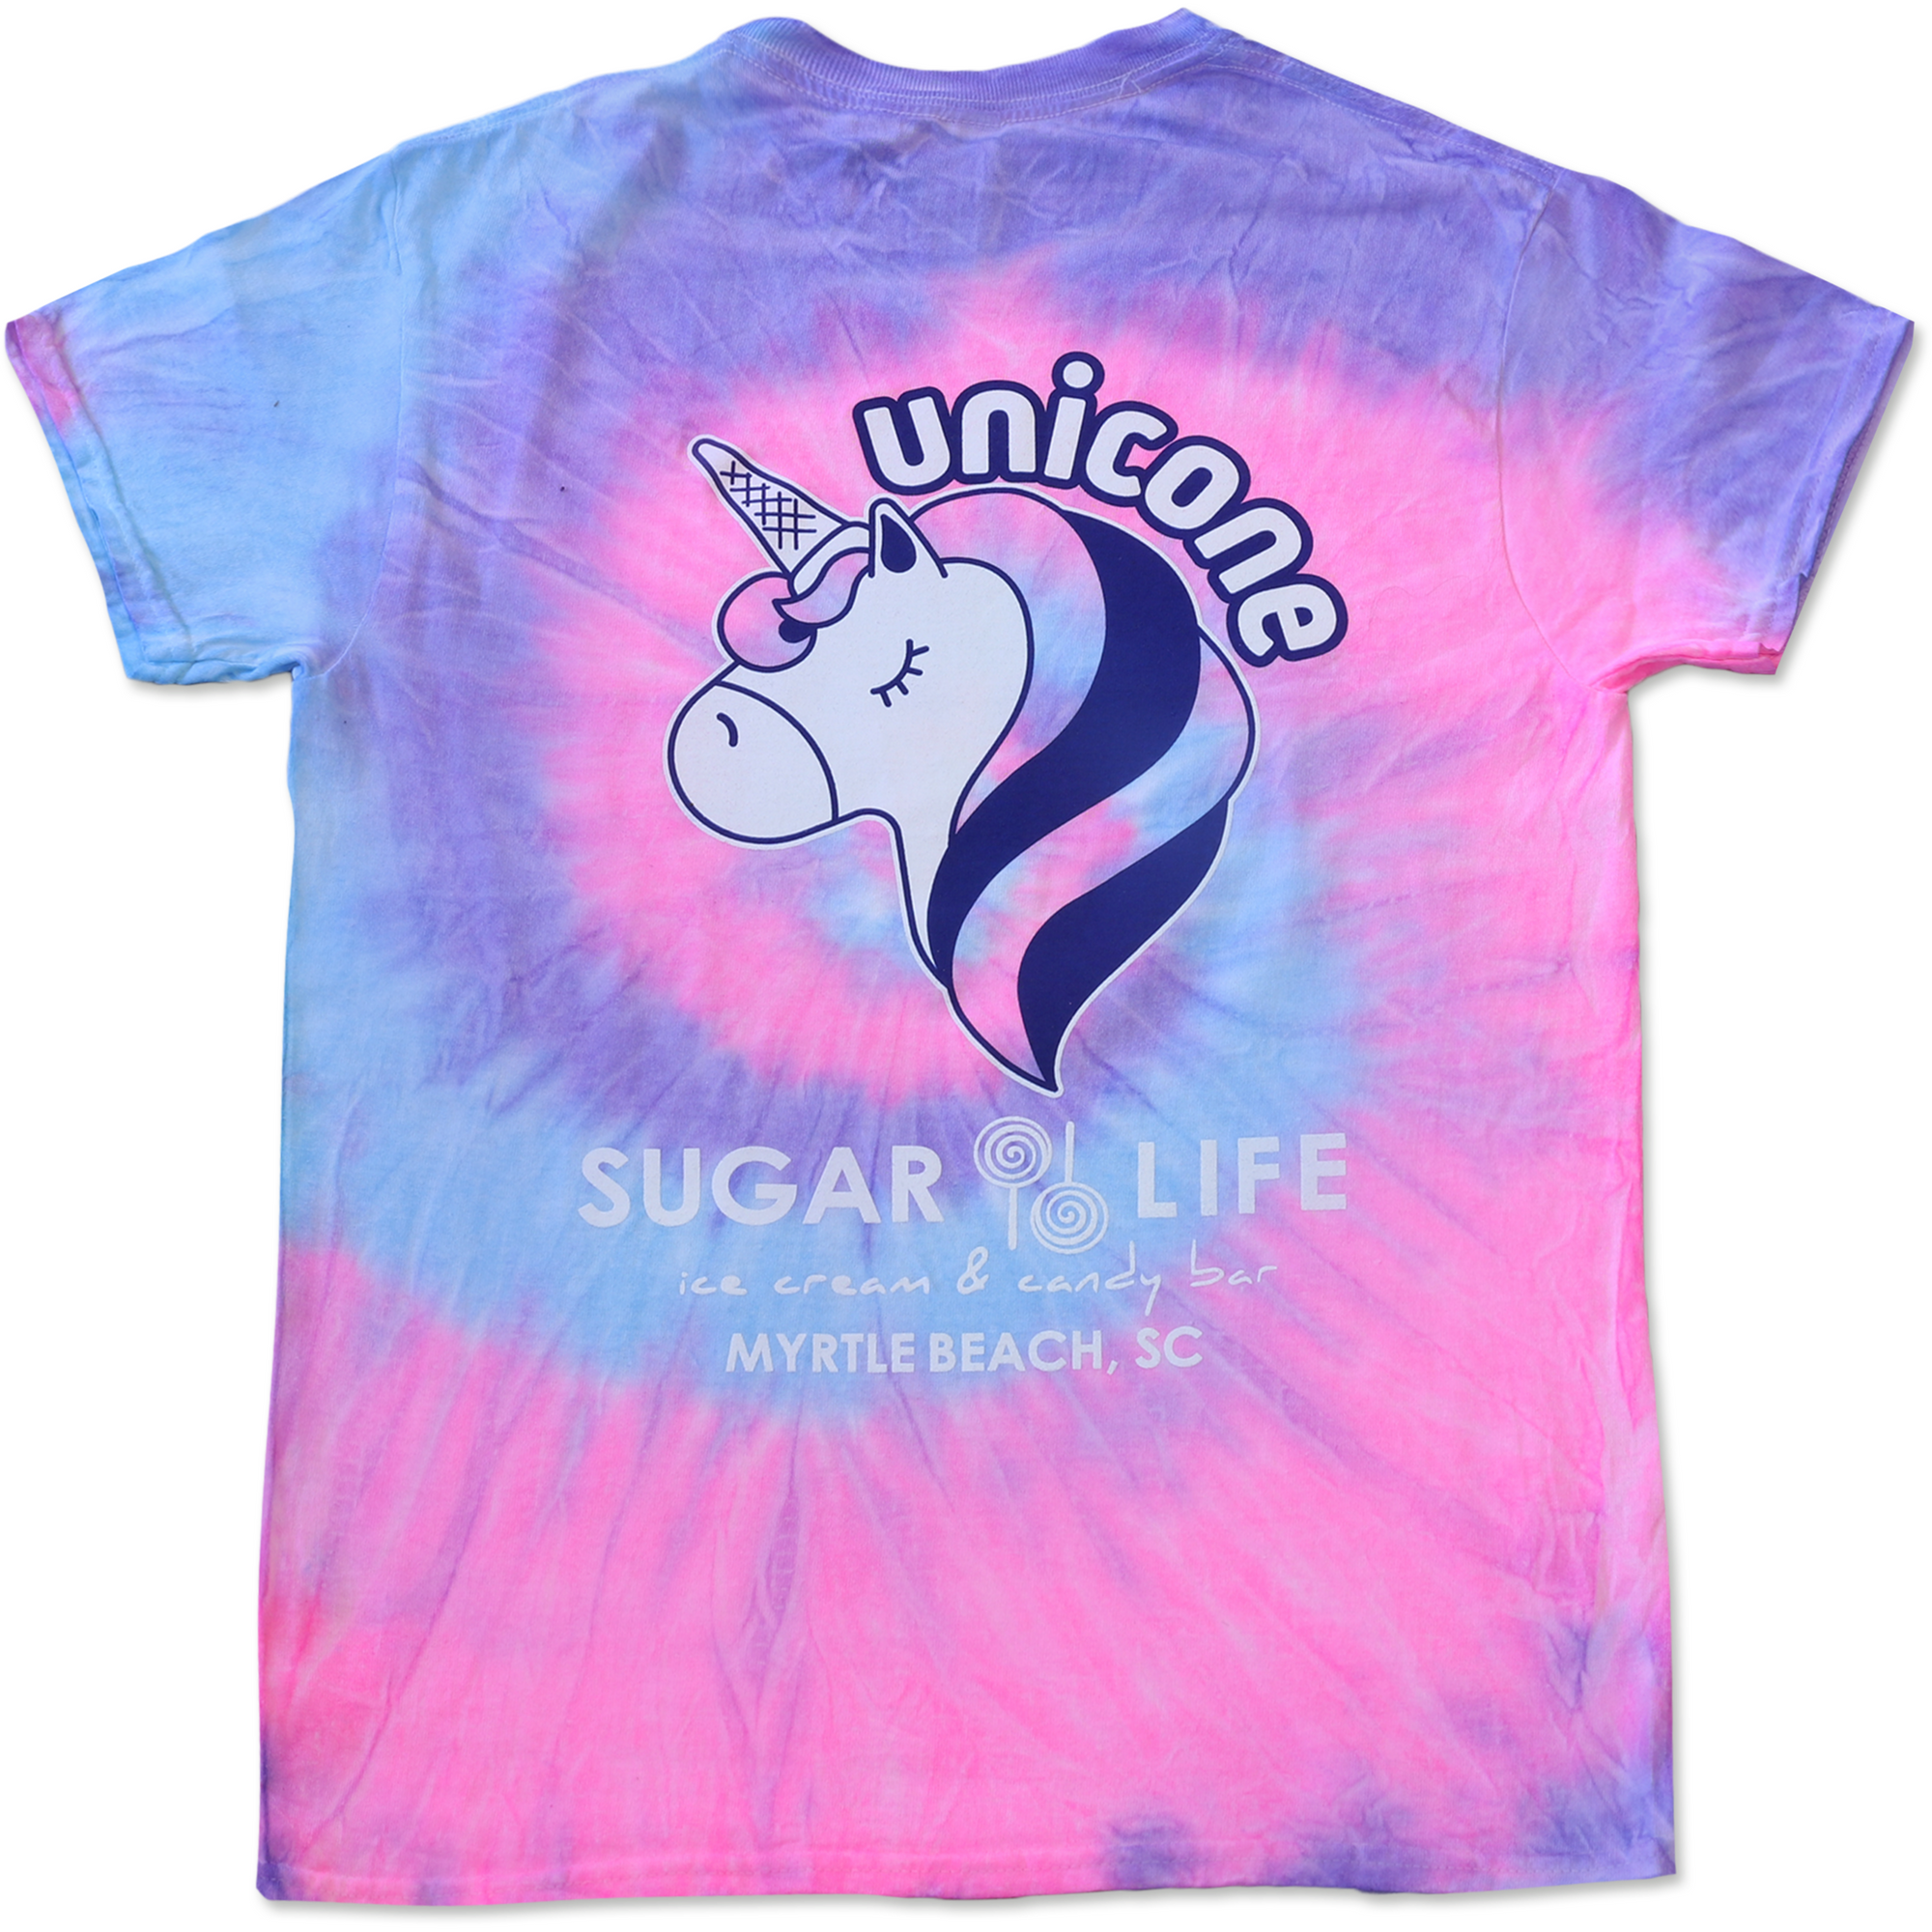 "Unicone" T-Shirt - Pink Jelly Donut Tie Dye